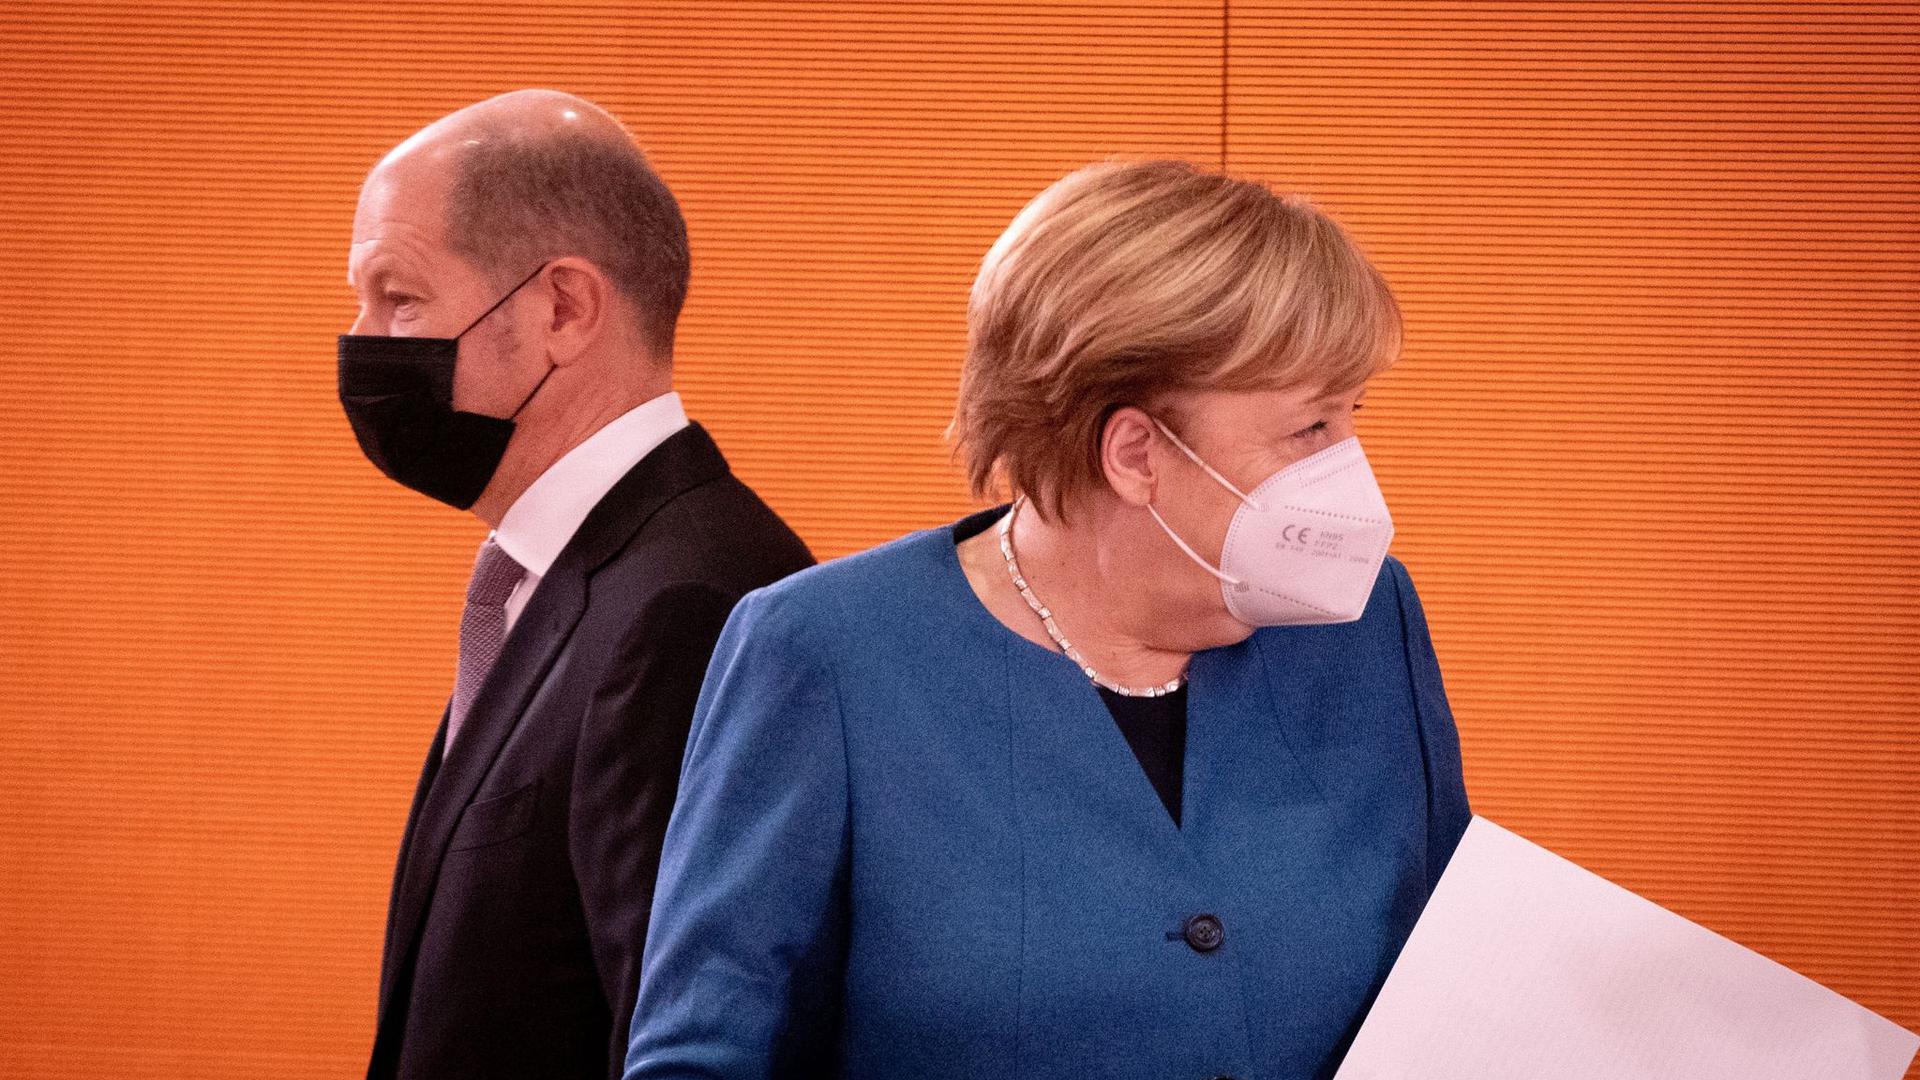 Bundeskanzlerin Angela Merkel (CDU) und Olaf Scholz (SPD), Bundesminister der Finanzen, kommen zur Sitzung des Bundeskabinetts im Bundeskanzleramt.